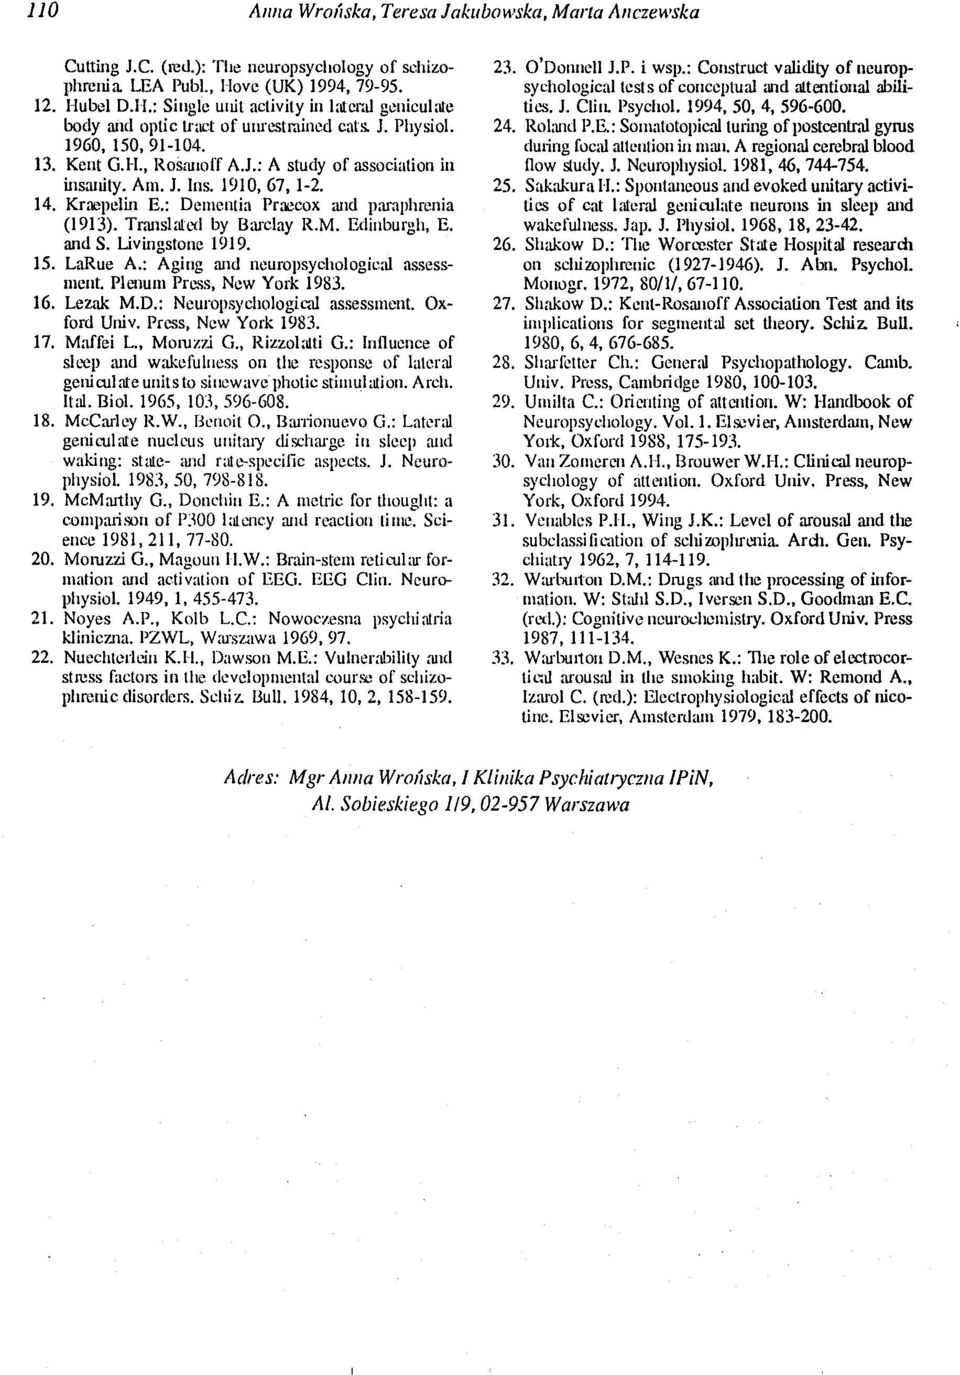 Am. J. Ins. 1910,67,1-2. 14. KraepeIin E.: Demcntia Praecox :U1d pru"aphrenia (1913). Trrulslaled by Bru-clay R.M. Edinburgh, E. and S. Livingstone 1919. 15. LaRuc A.